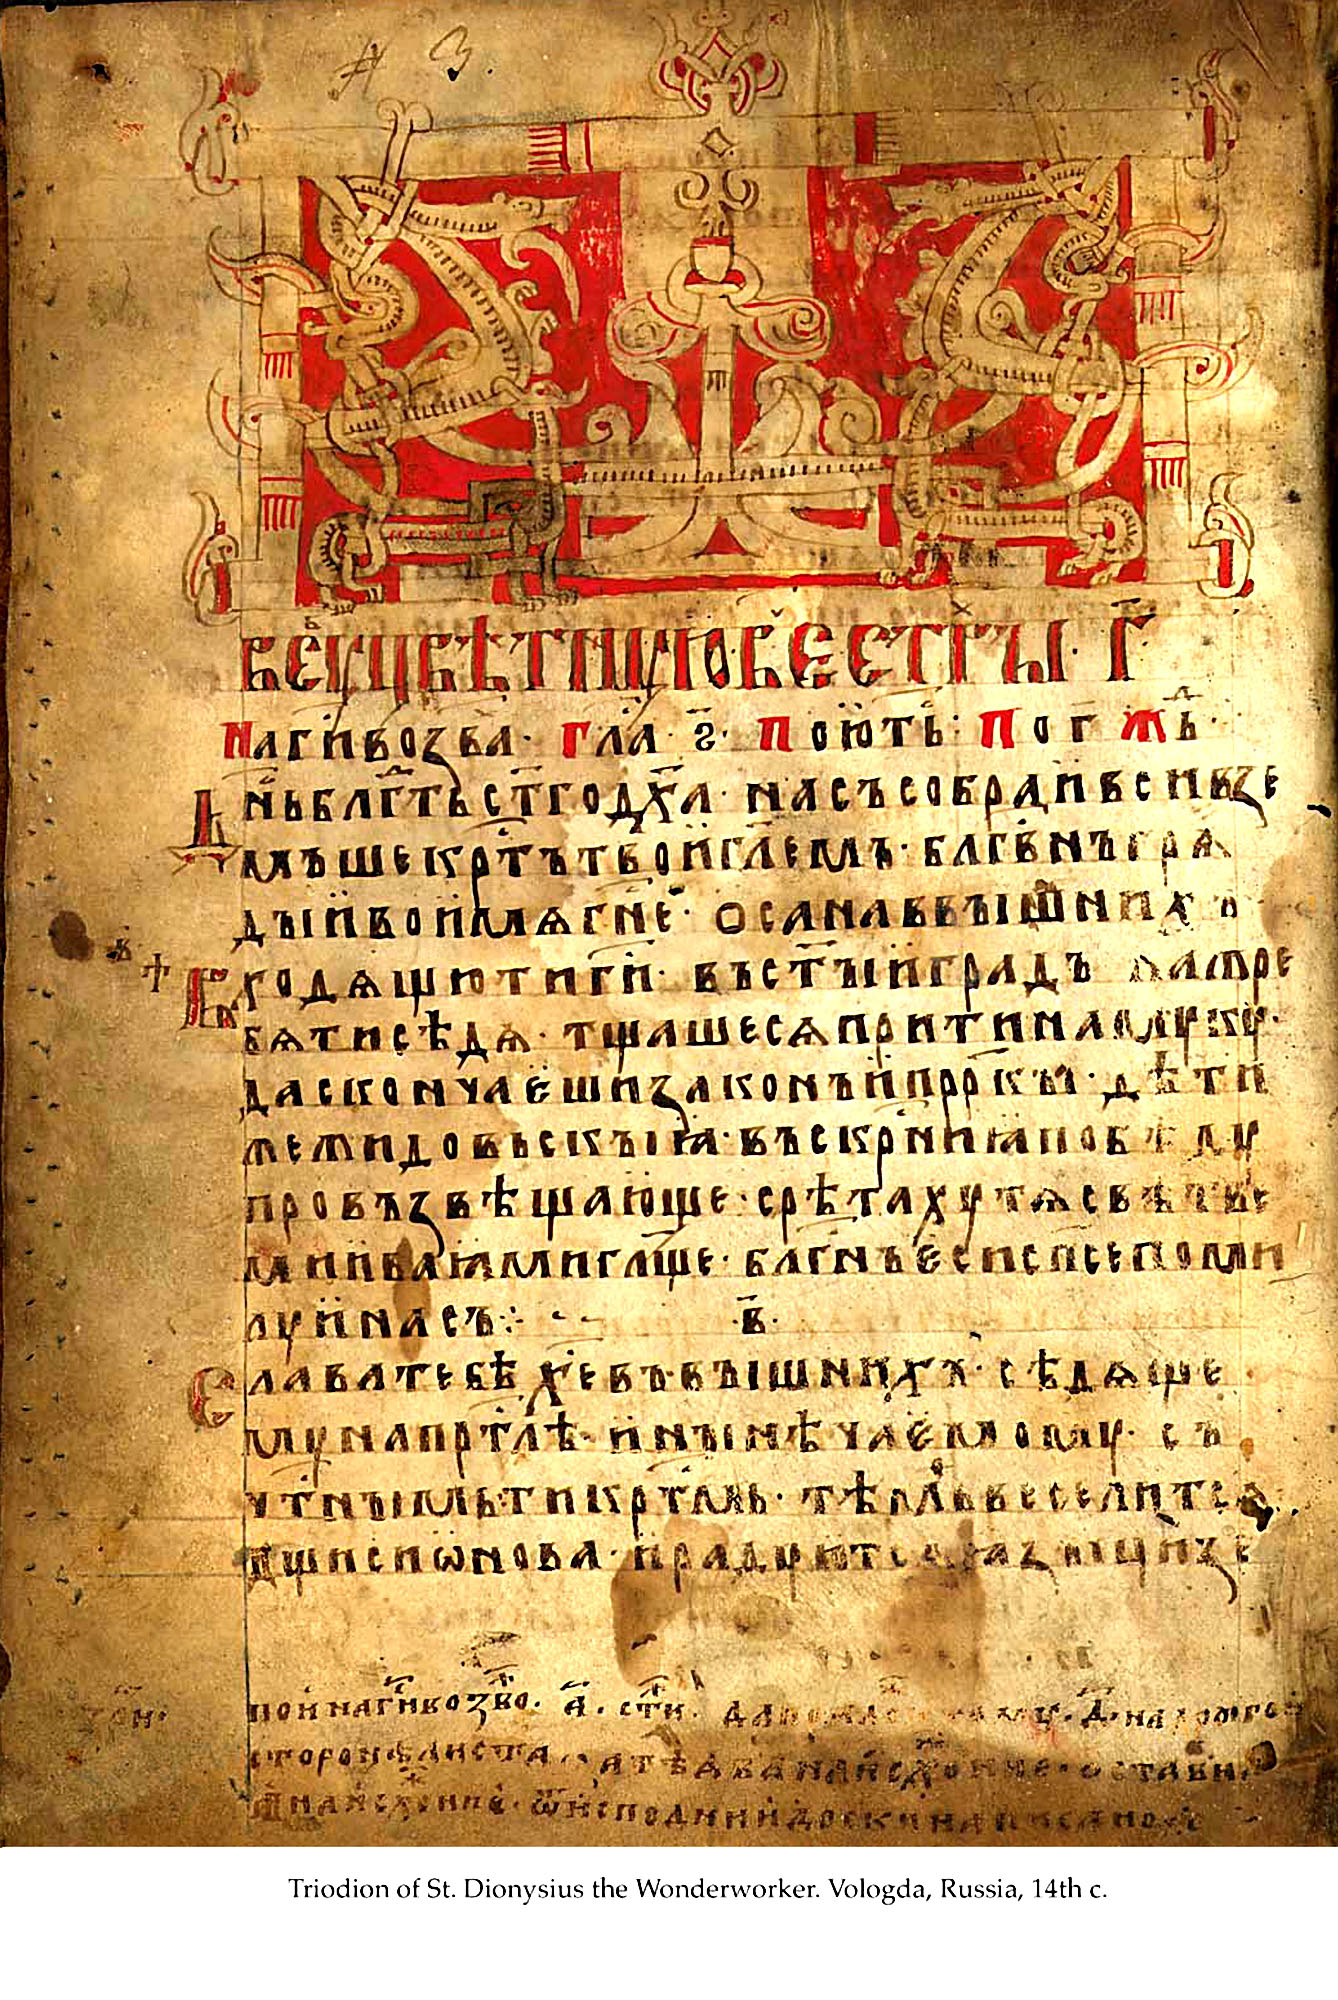 Рукописная книга древней Руси 9 века